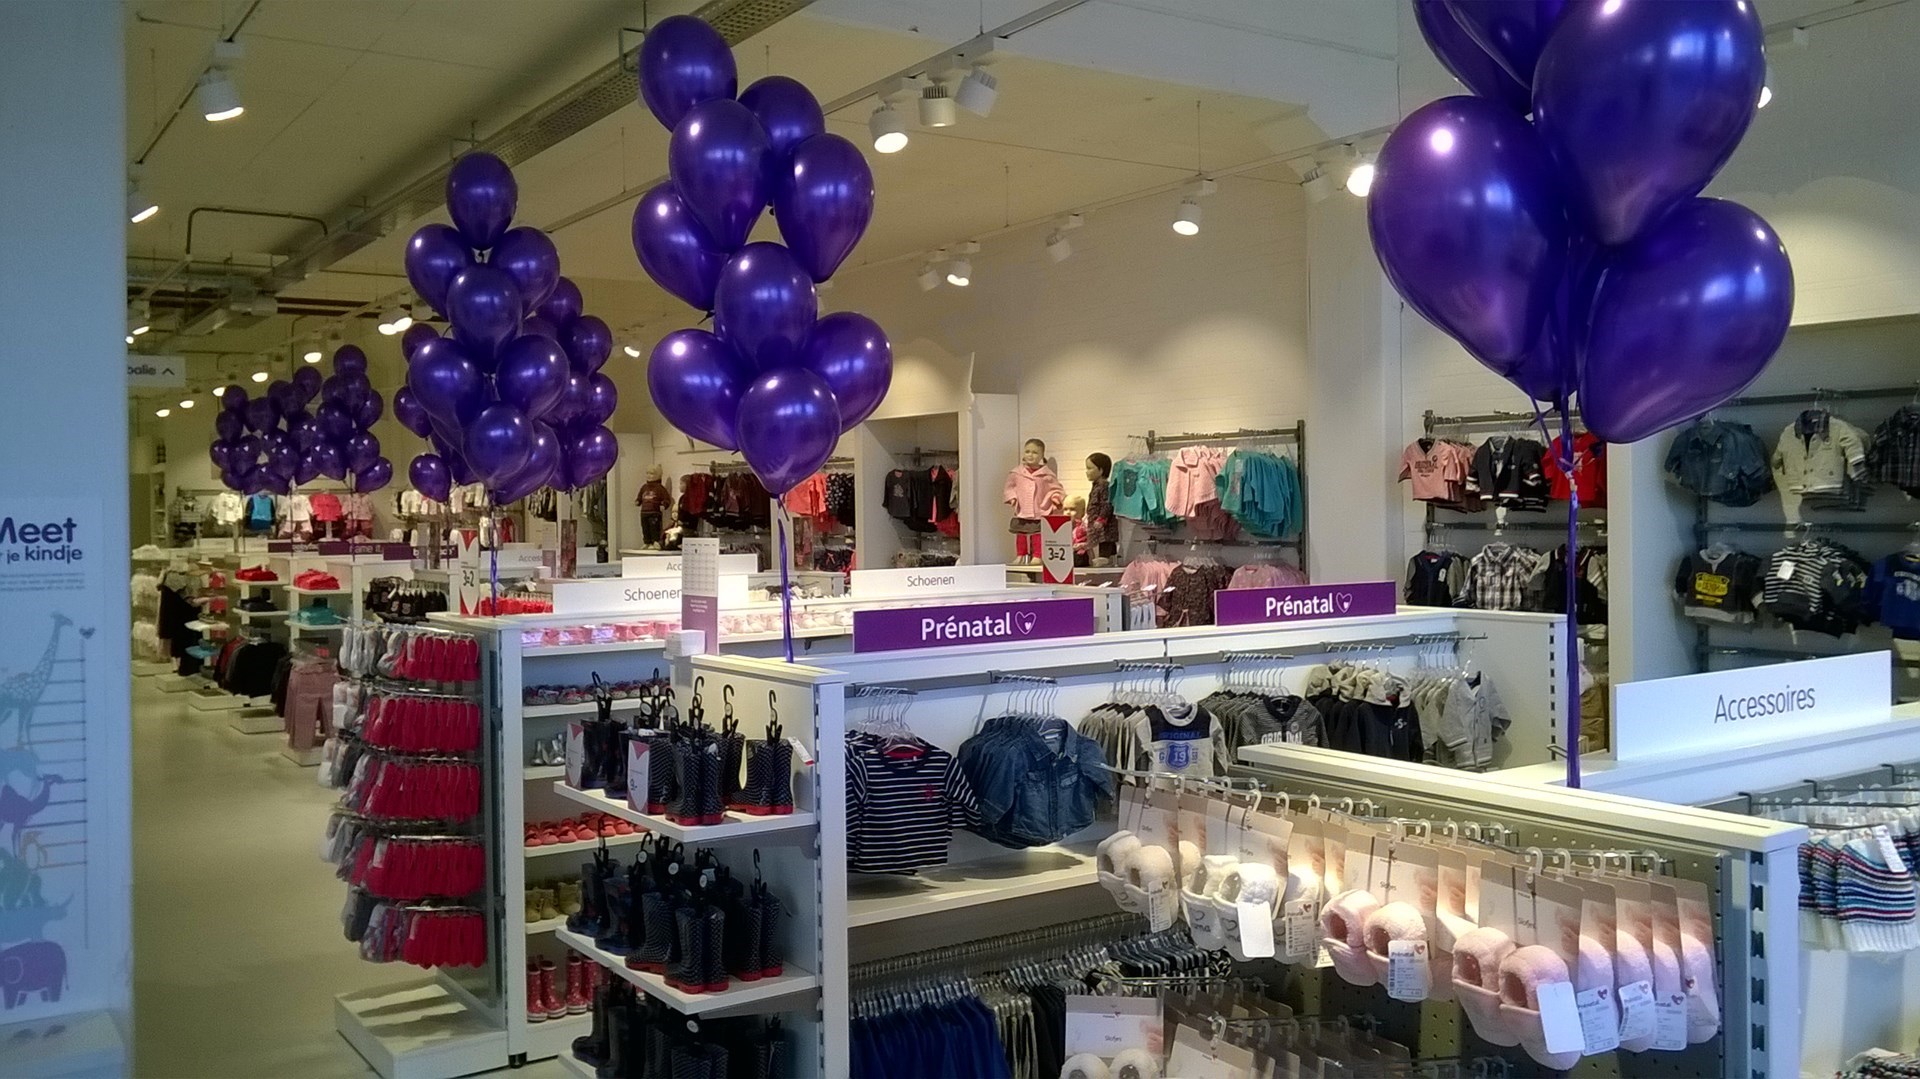 helium ballonnen trossen in winkel als decoratie op de kasten Prenatal